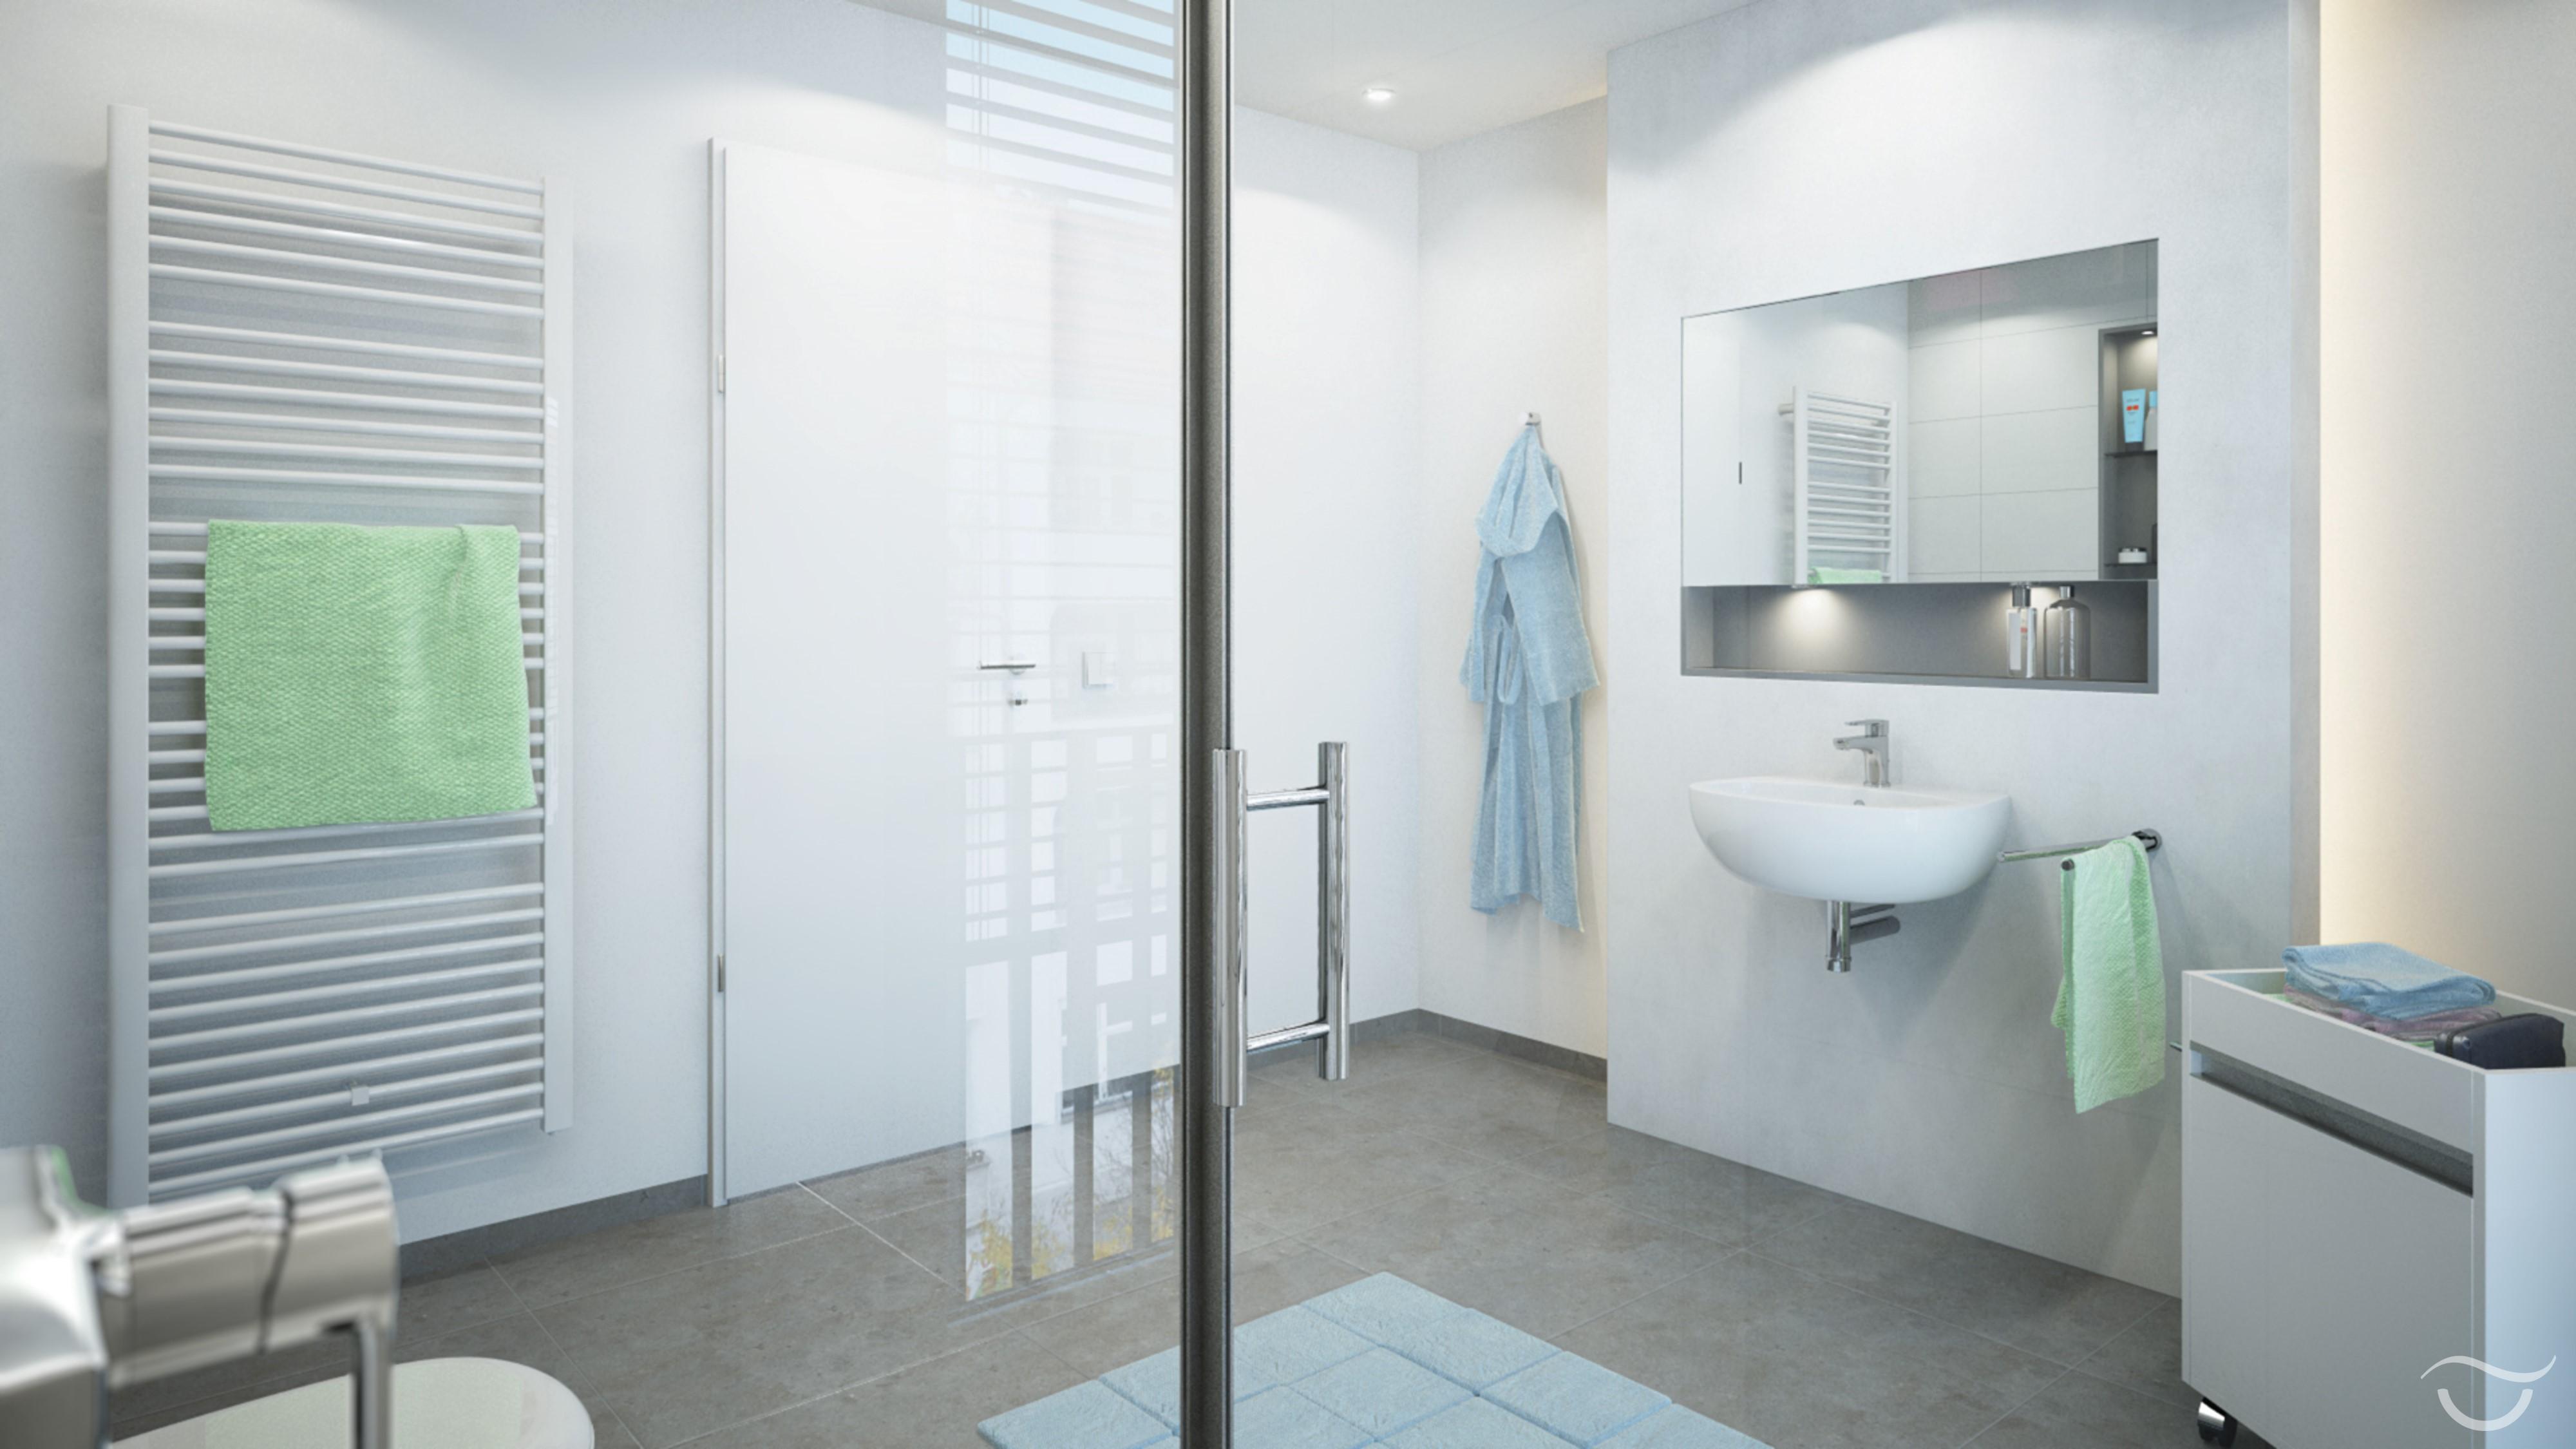 Badezimmer mit modersten Armaturen #puristisch ©Banovo GmbH